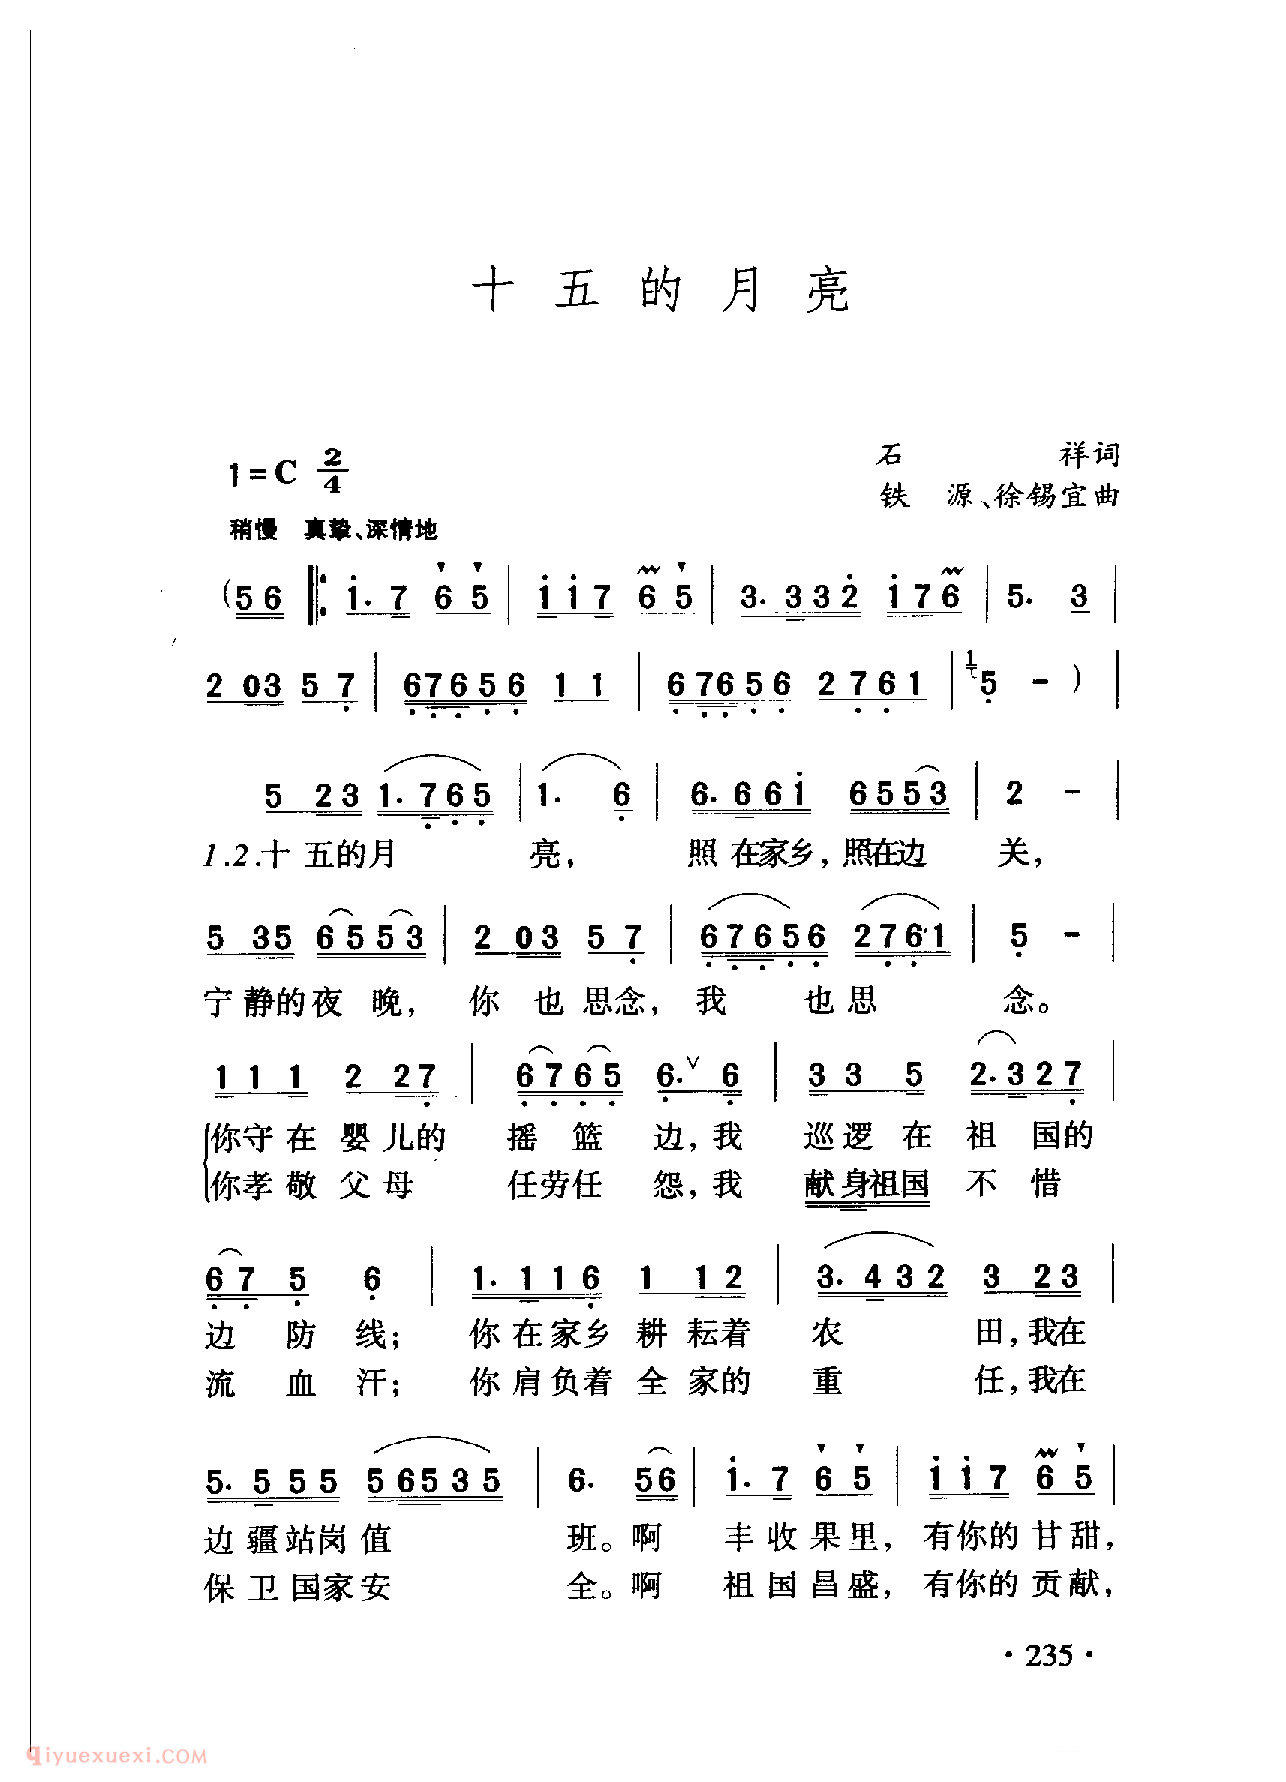 中国名歌[十五的月亮]乐谱